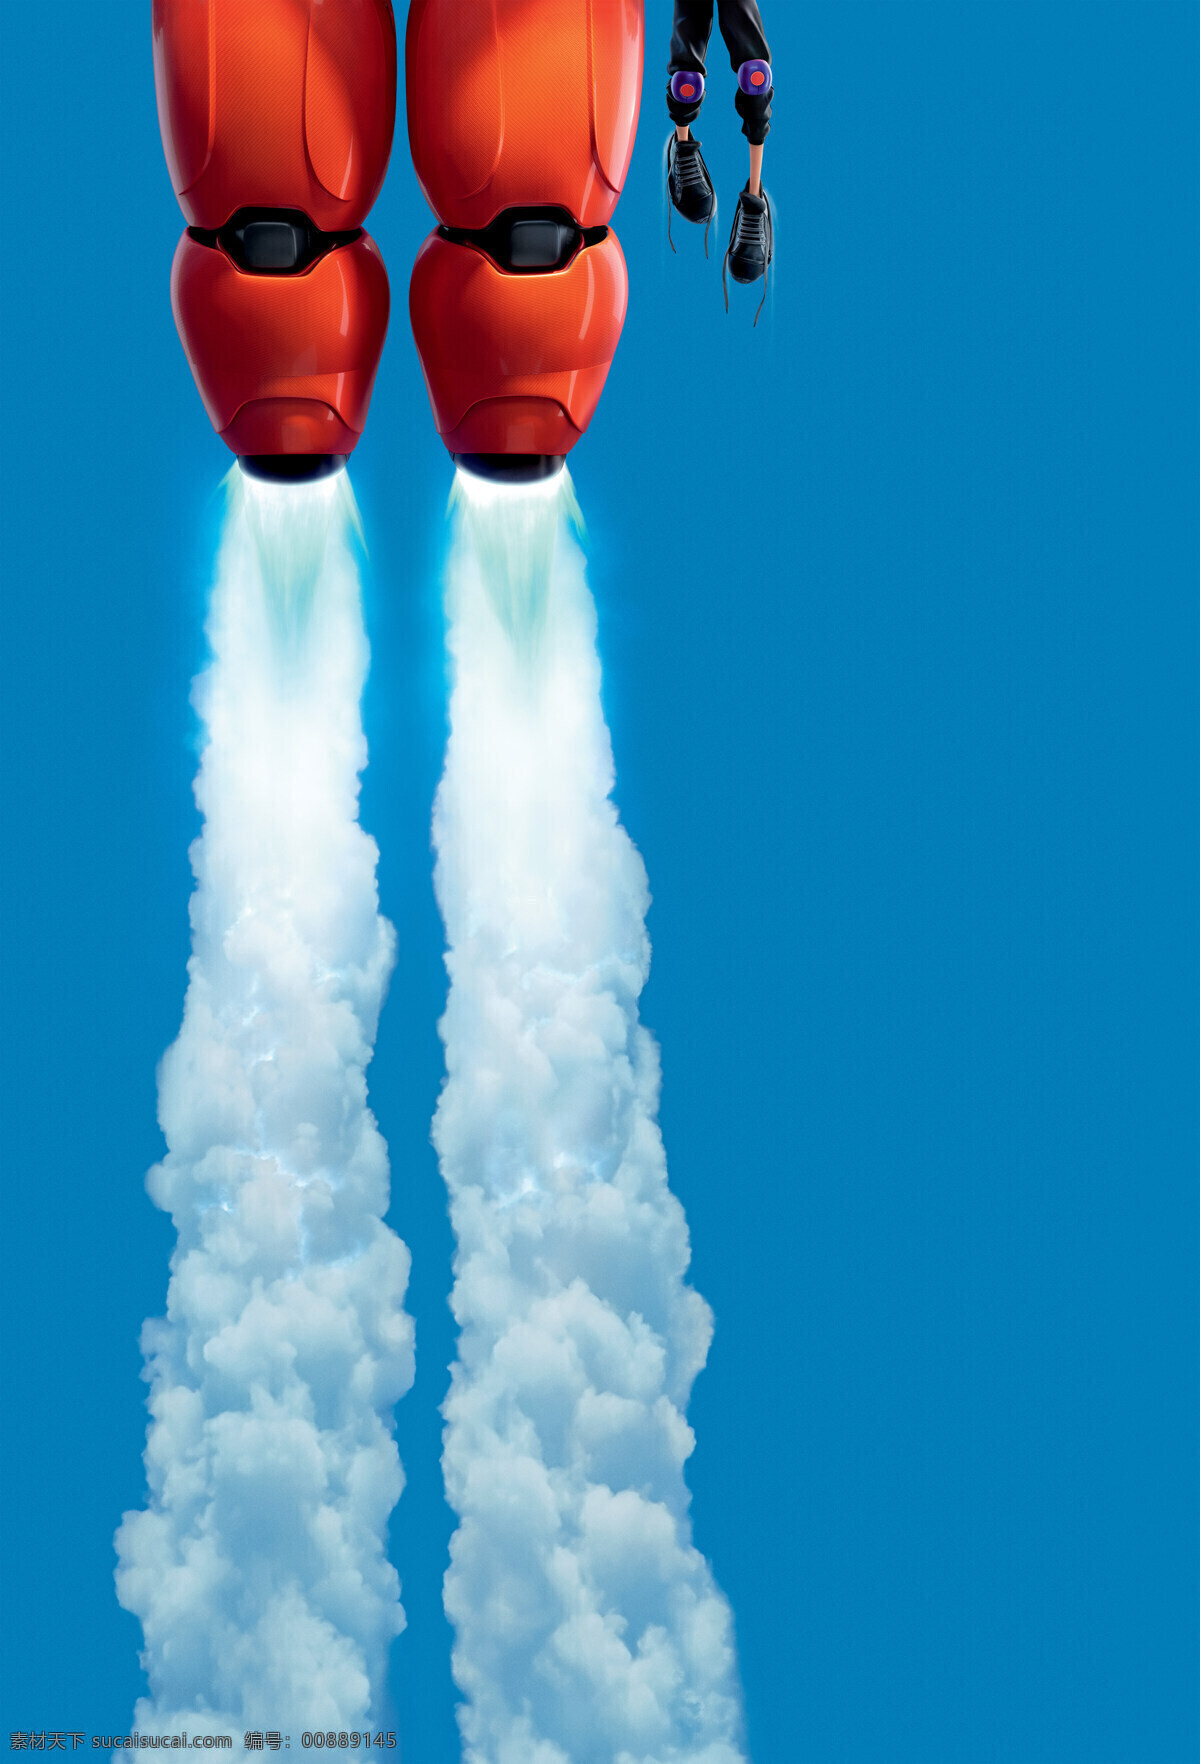 机器人 飞天 喷雾 电影海报 动画片 儿童 公仔 漫画 美国 喷气 大白 飞起 动漫角色 大英雄联盟 大英雄天团 六大英雄 超能陆战队 卡通 动漫 可爱